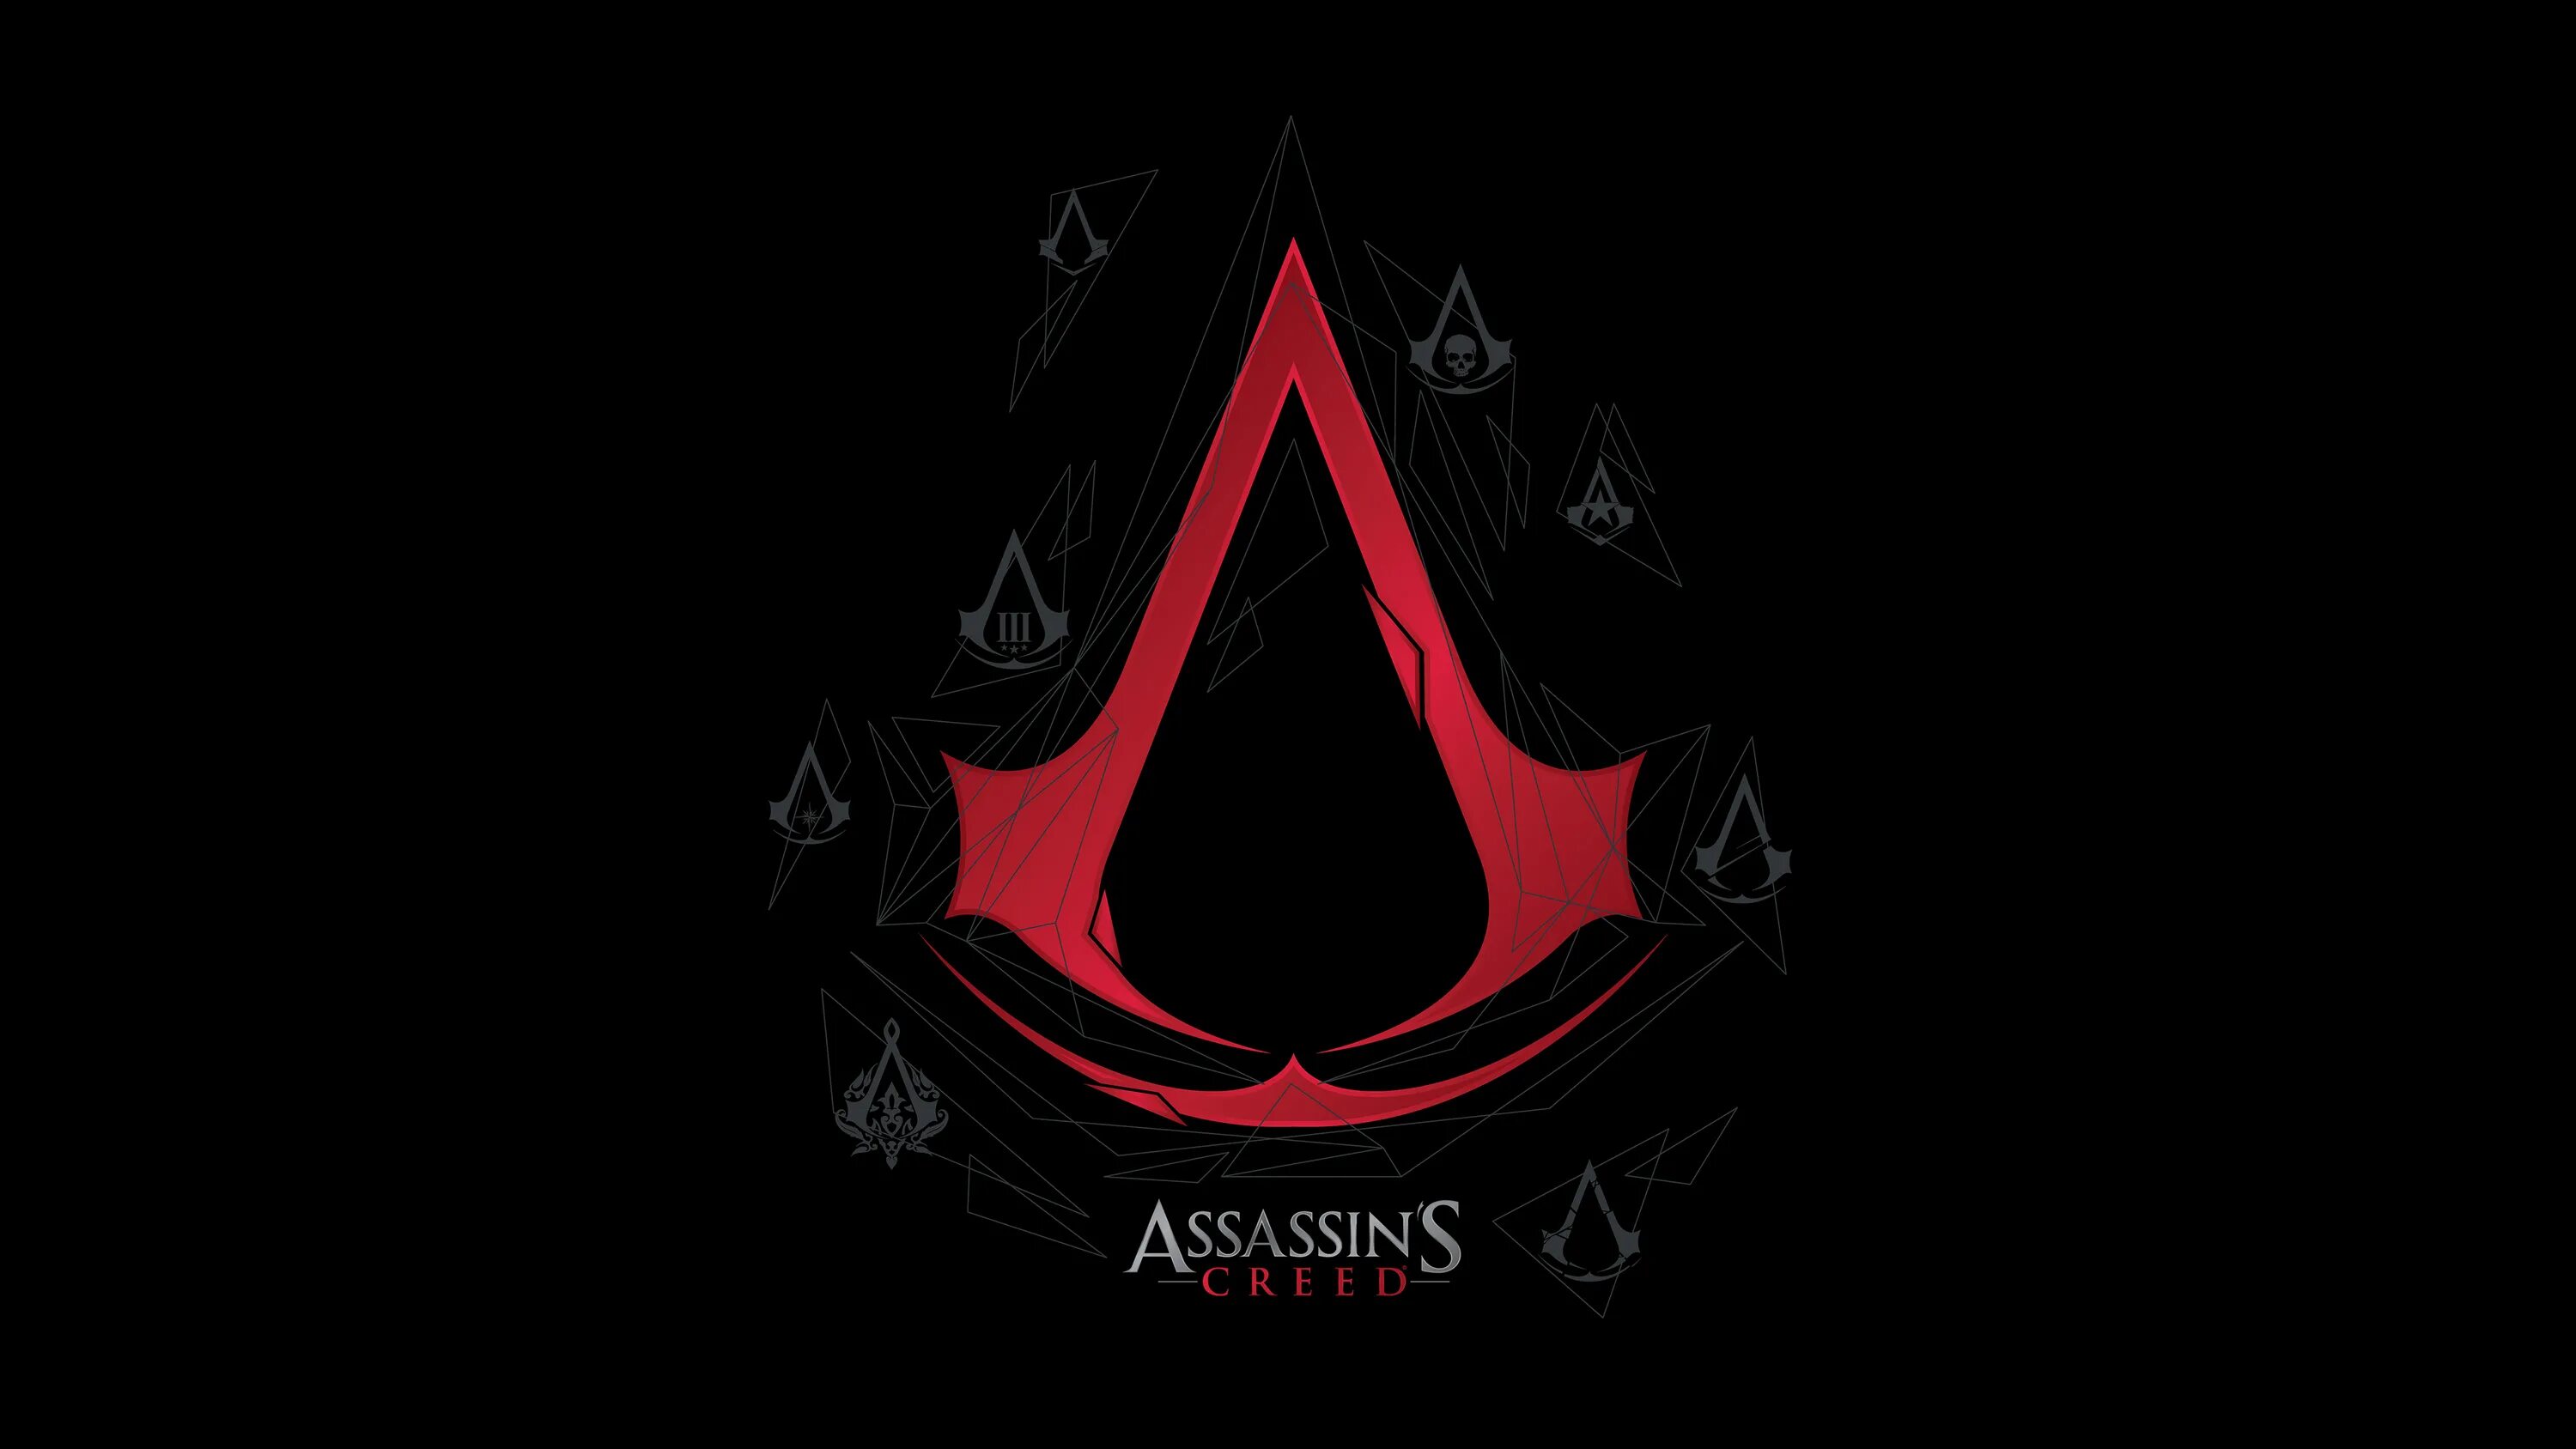 Ассасин Крид знак. Assassins Creed знак ассасинов. Ассасин Крид 4 знак. Assassin's Creed логотип. 128 1024 1024 8